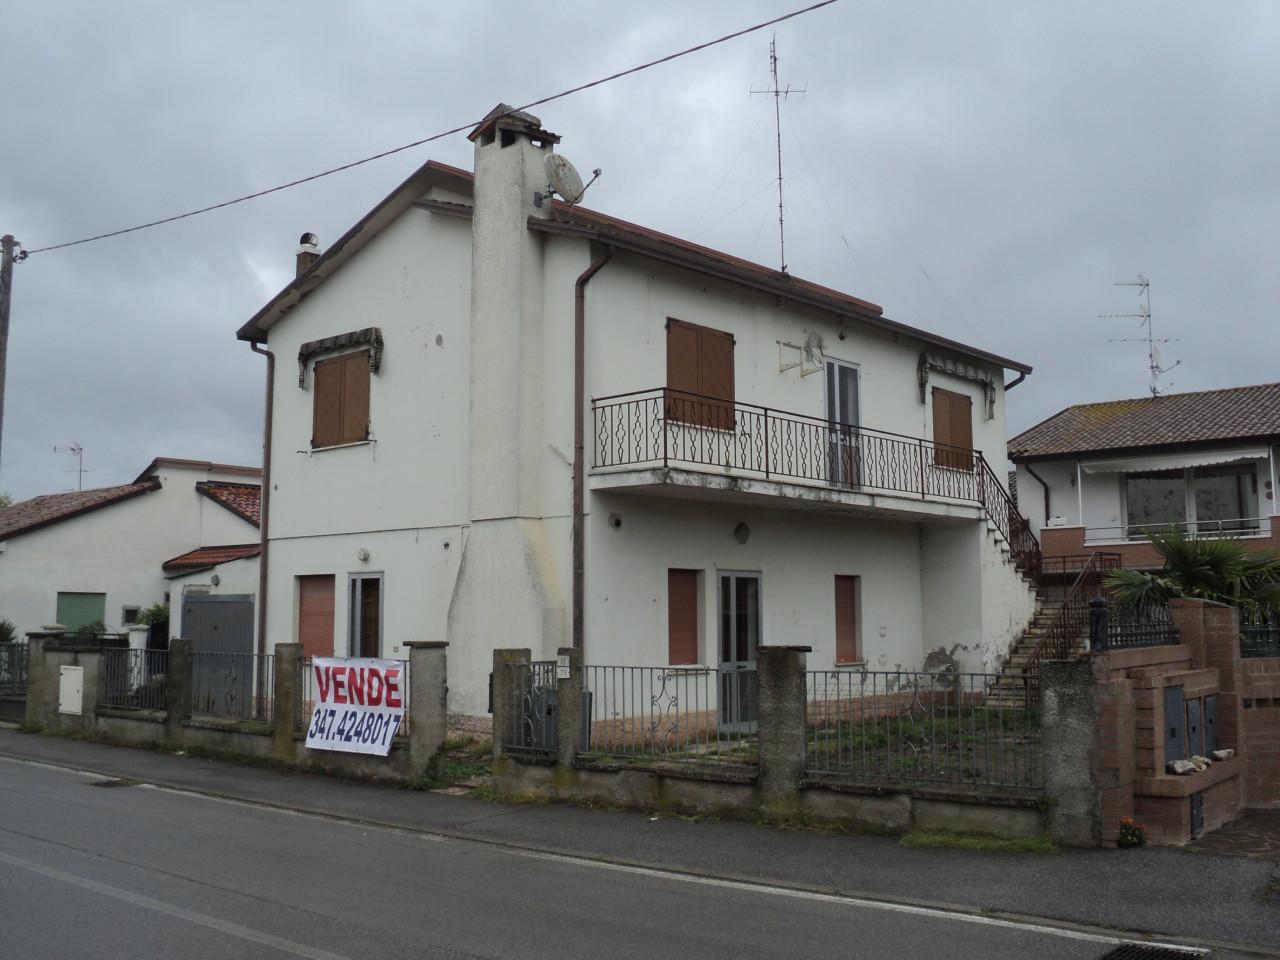 Villa in vendita a Mesola